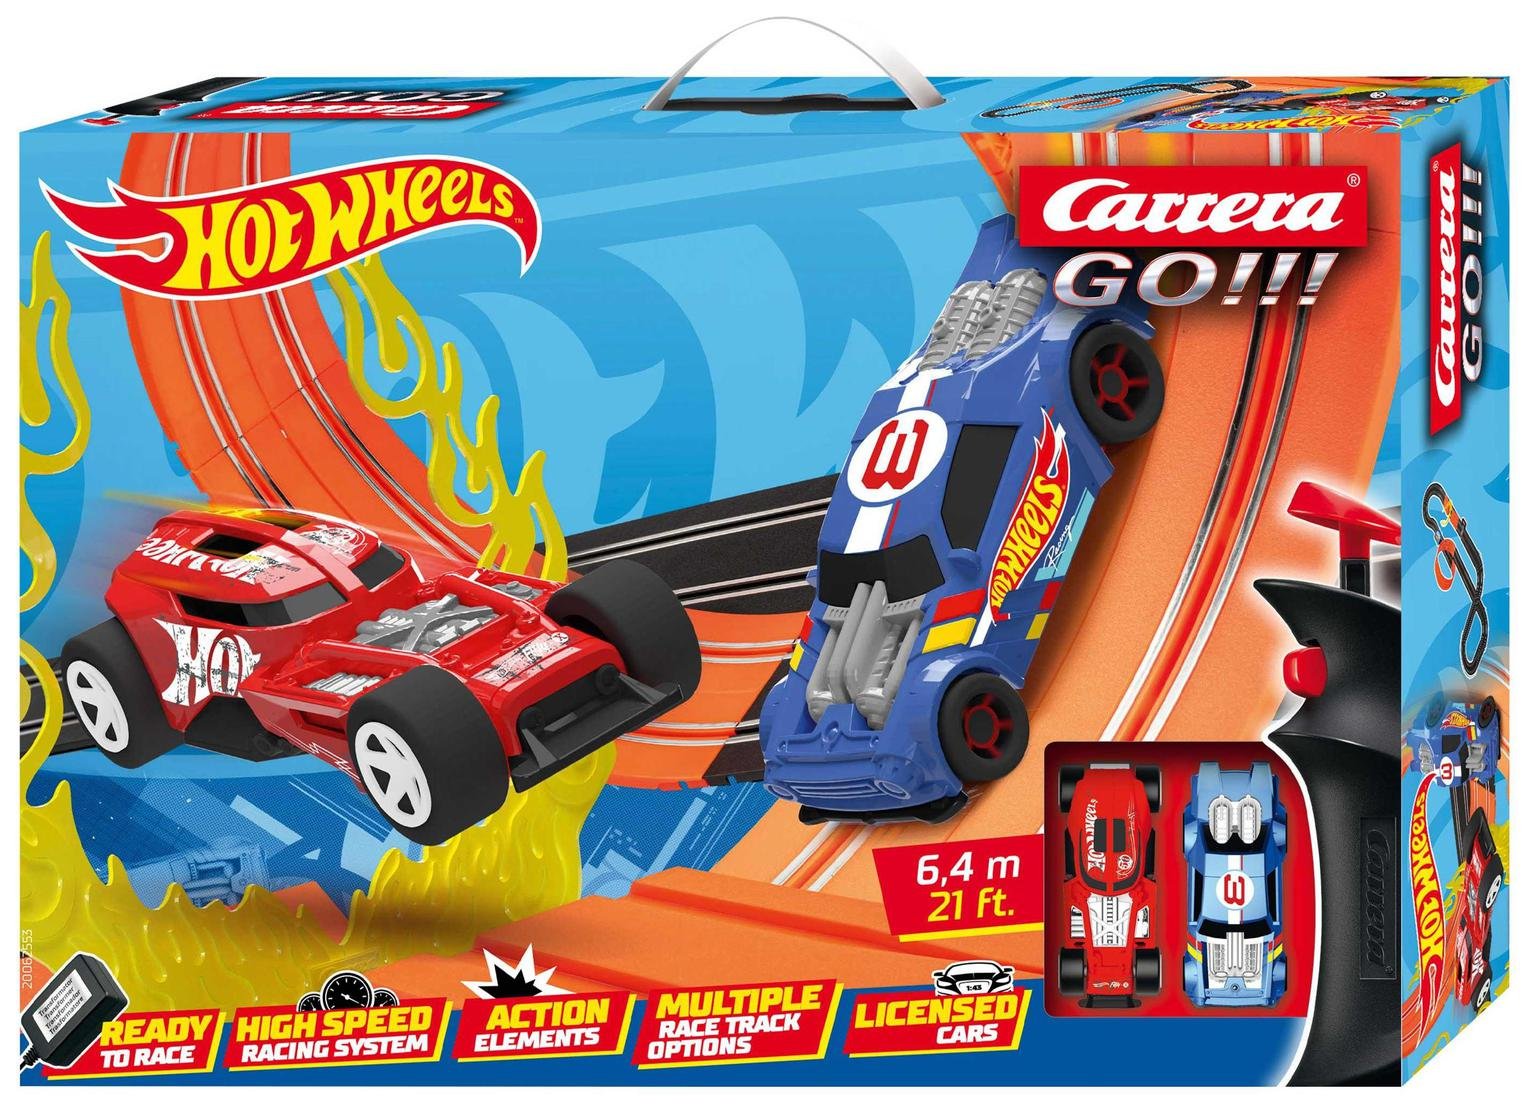 Carrera GO!!! Hot Wheels 6.4 Slot Racing Set (6.4m) review